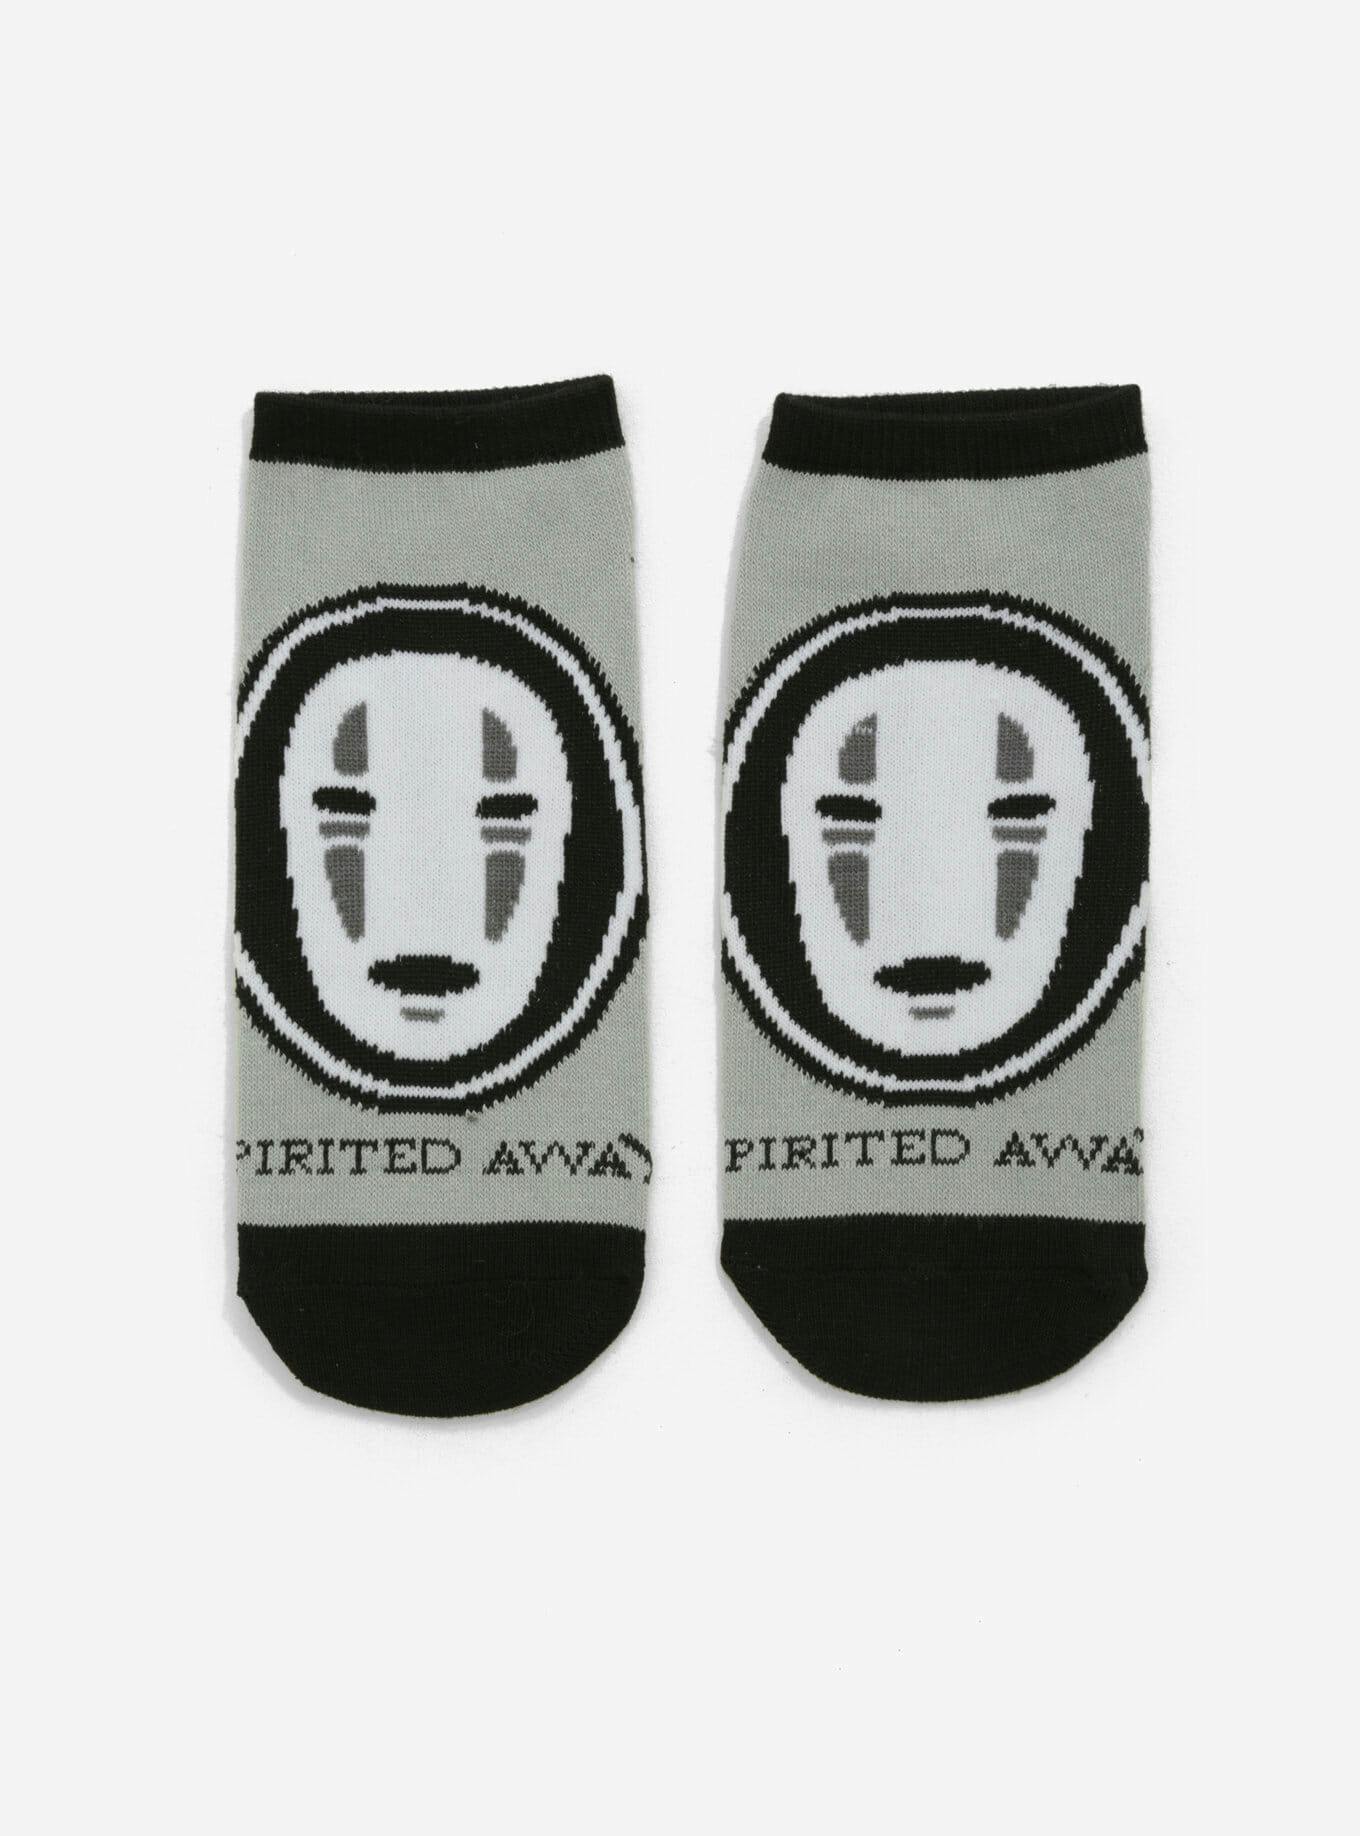 spirited away socks